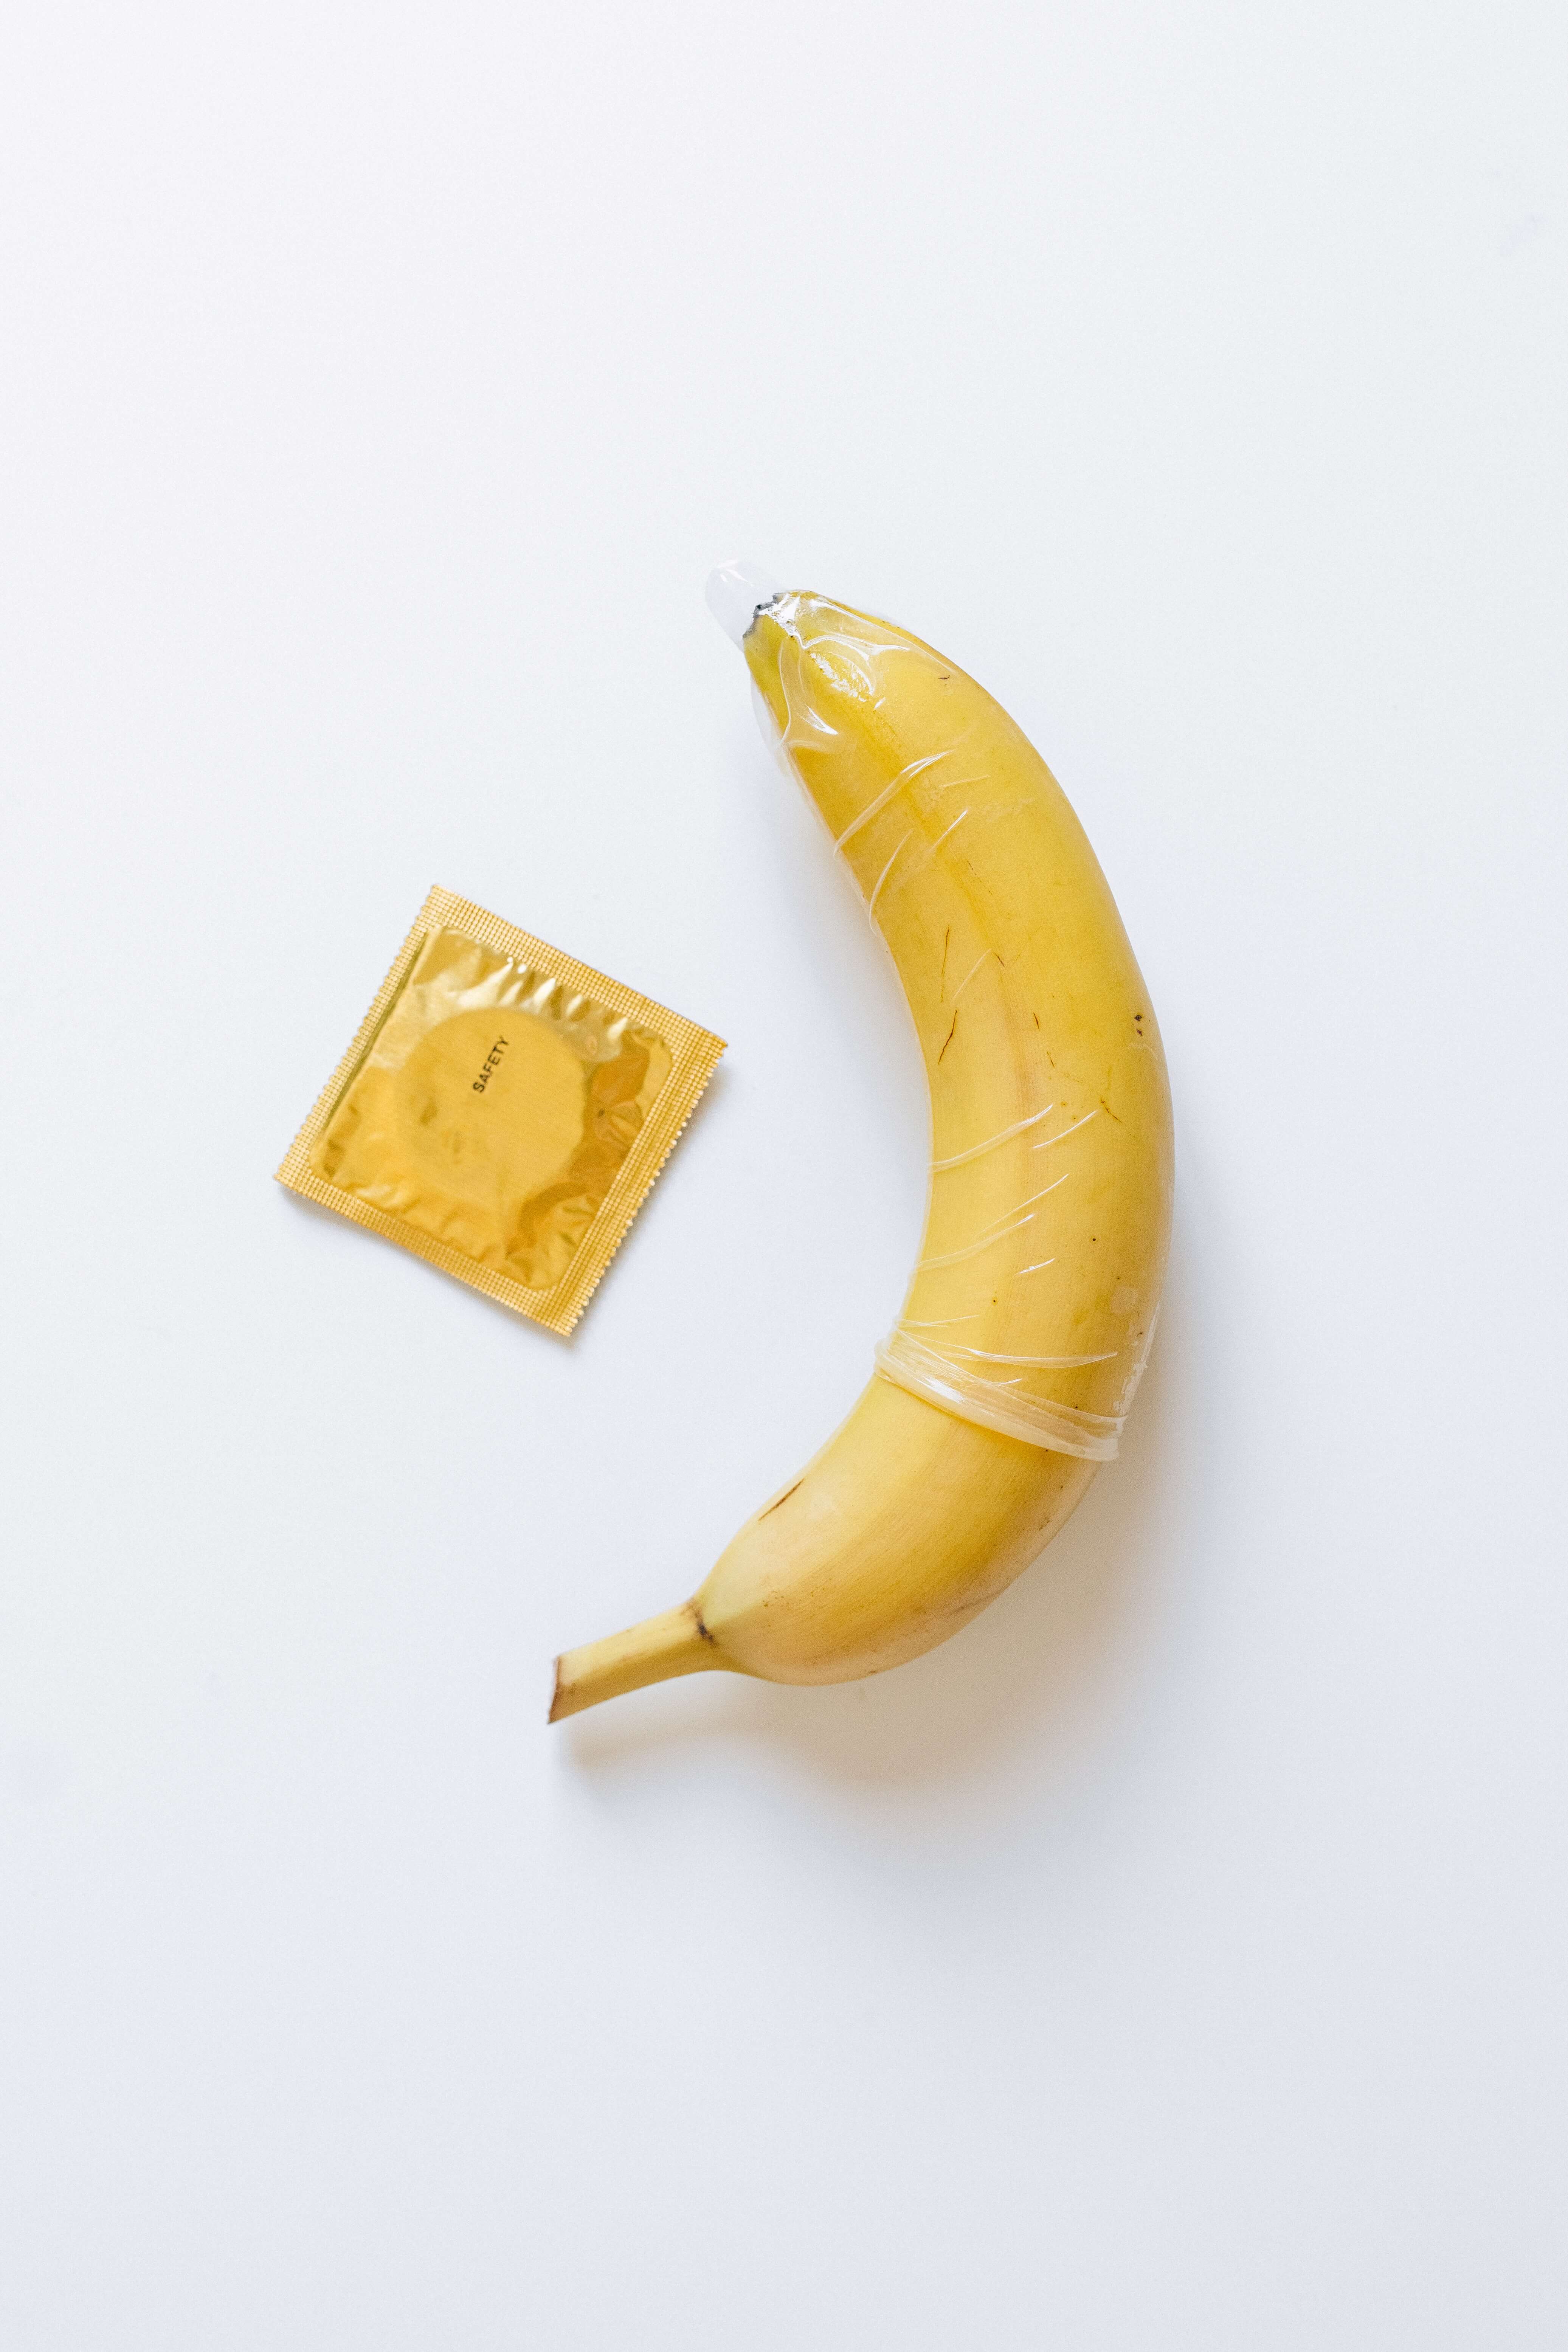 바나나에 성생활 용품(성인용품)을 씌어놓은 모습